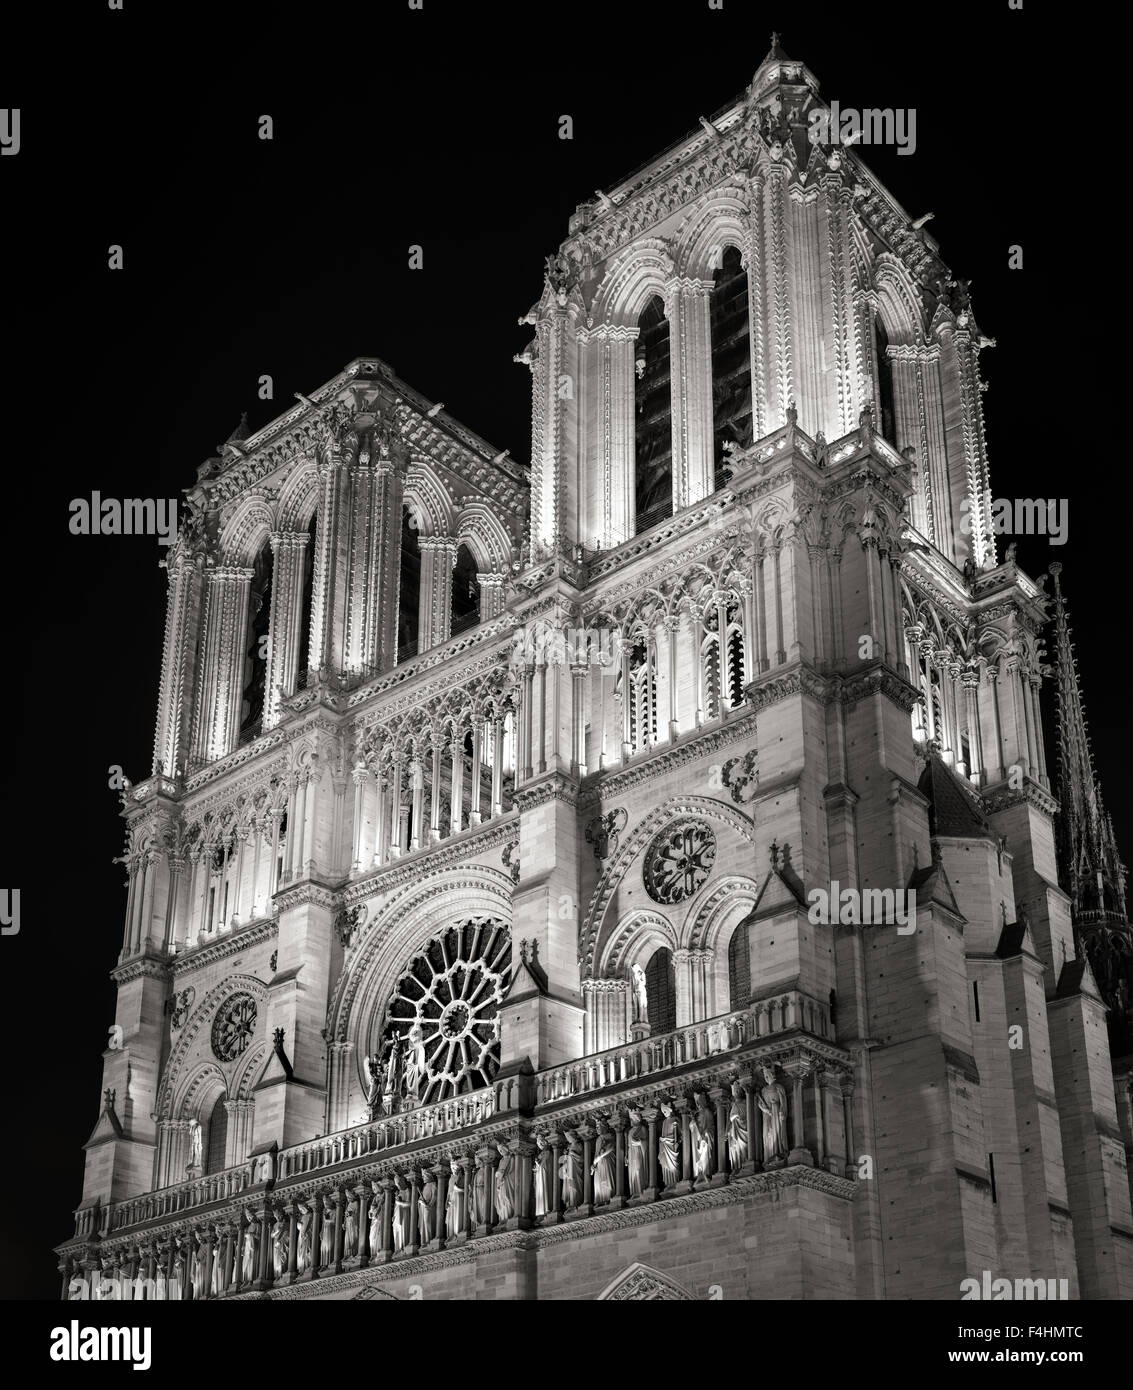 Türme und Fassade von Notre-Dame de Paris Kathedrale beleuchtet in der Nacht, Ile De La Cite, Frankreich. Französische gotische Architektur Stockfoto